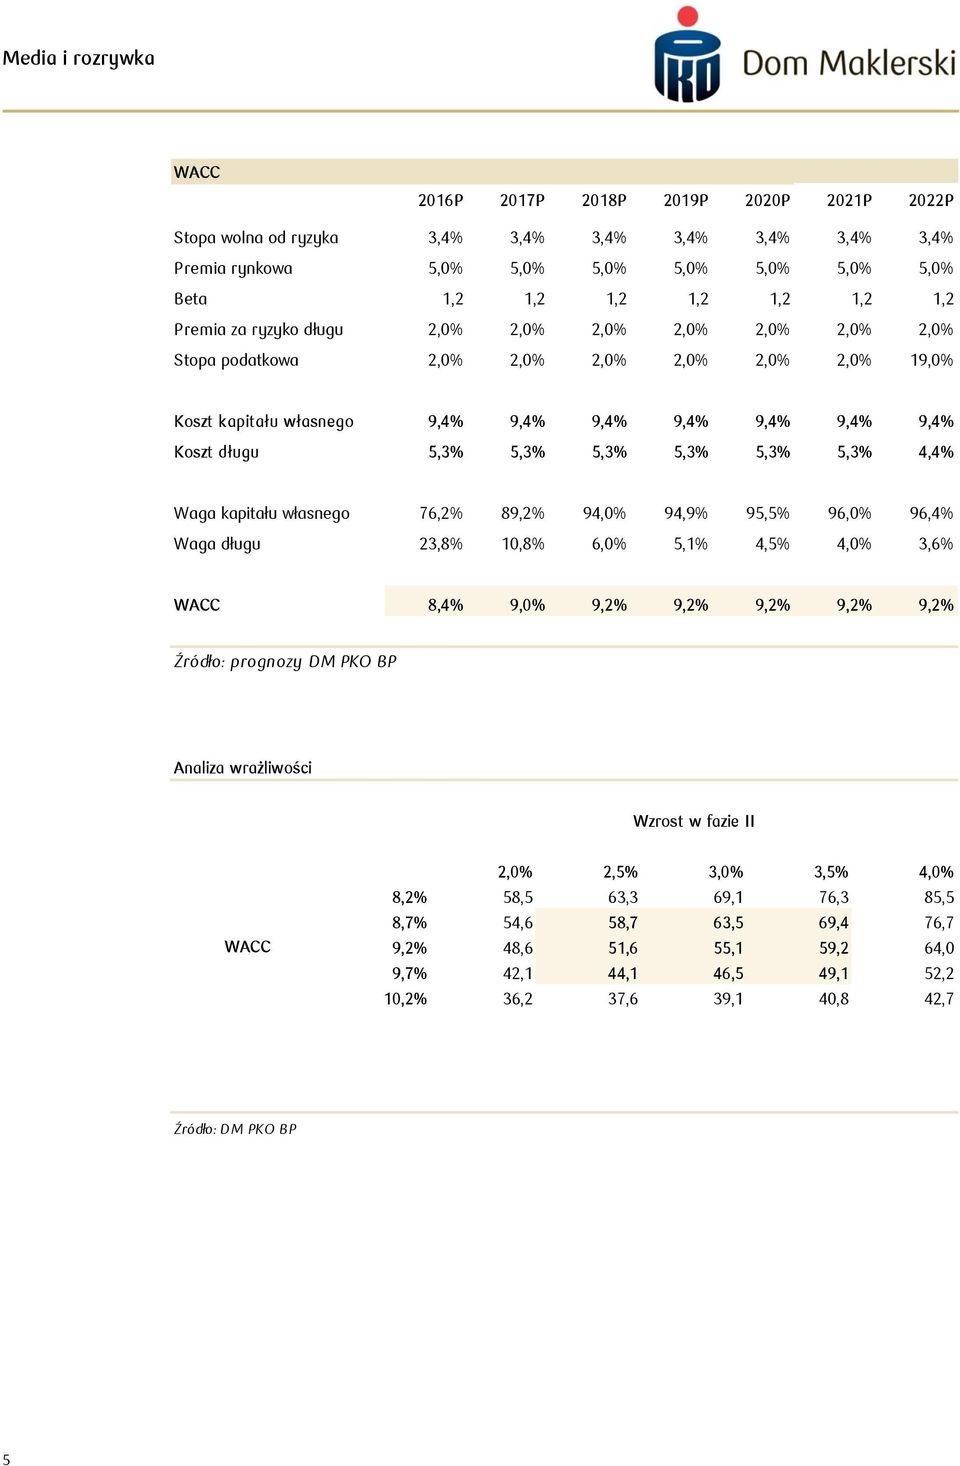 5,3% 4,4% Waga kapitału własnego 76,2% 89,2% 94,0% 94,9% 95,5% 96,0% 96,4% Waga długu 23,8% 10,8% 6,0% 5,1% 4,5% 4,0% 3,6% WACC 8,4% 9,0% 9,2% 9,2% 9,2% 9,2% 9,2% Źródło: prognozy DM PKO BP Analiza